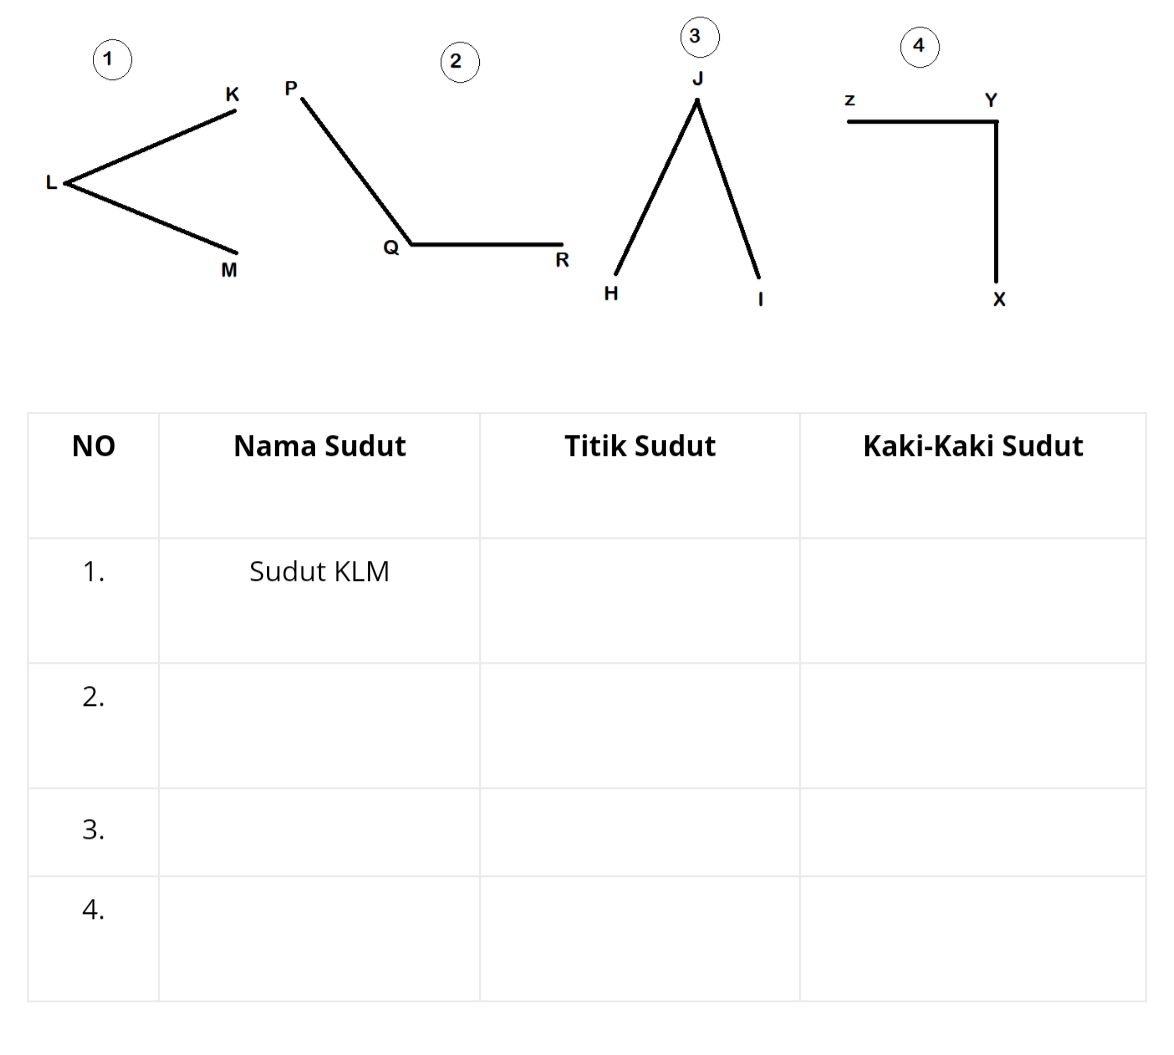 Lengkapi Tabel Bagian Sudut Berikut Sesuai Gambar, Titik Sudut dan Kaki-kaki Sudut! Kunci Jawaban Kelas 3 SD Muatan Pelajaran Matematika